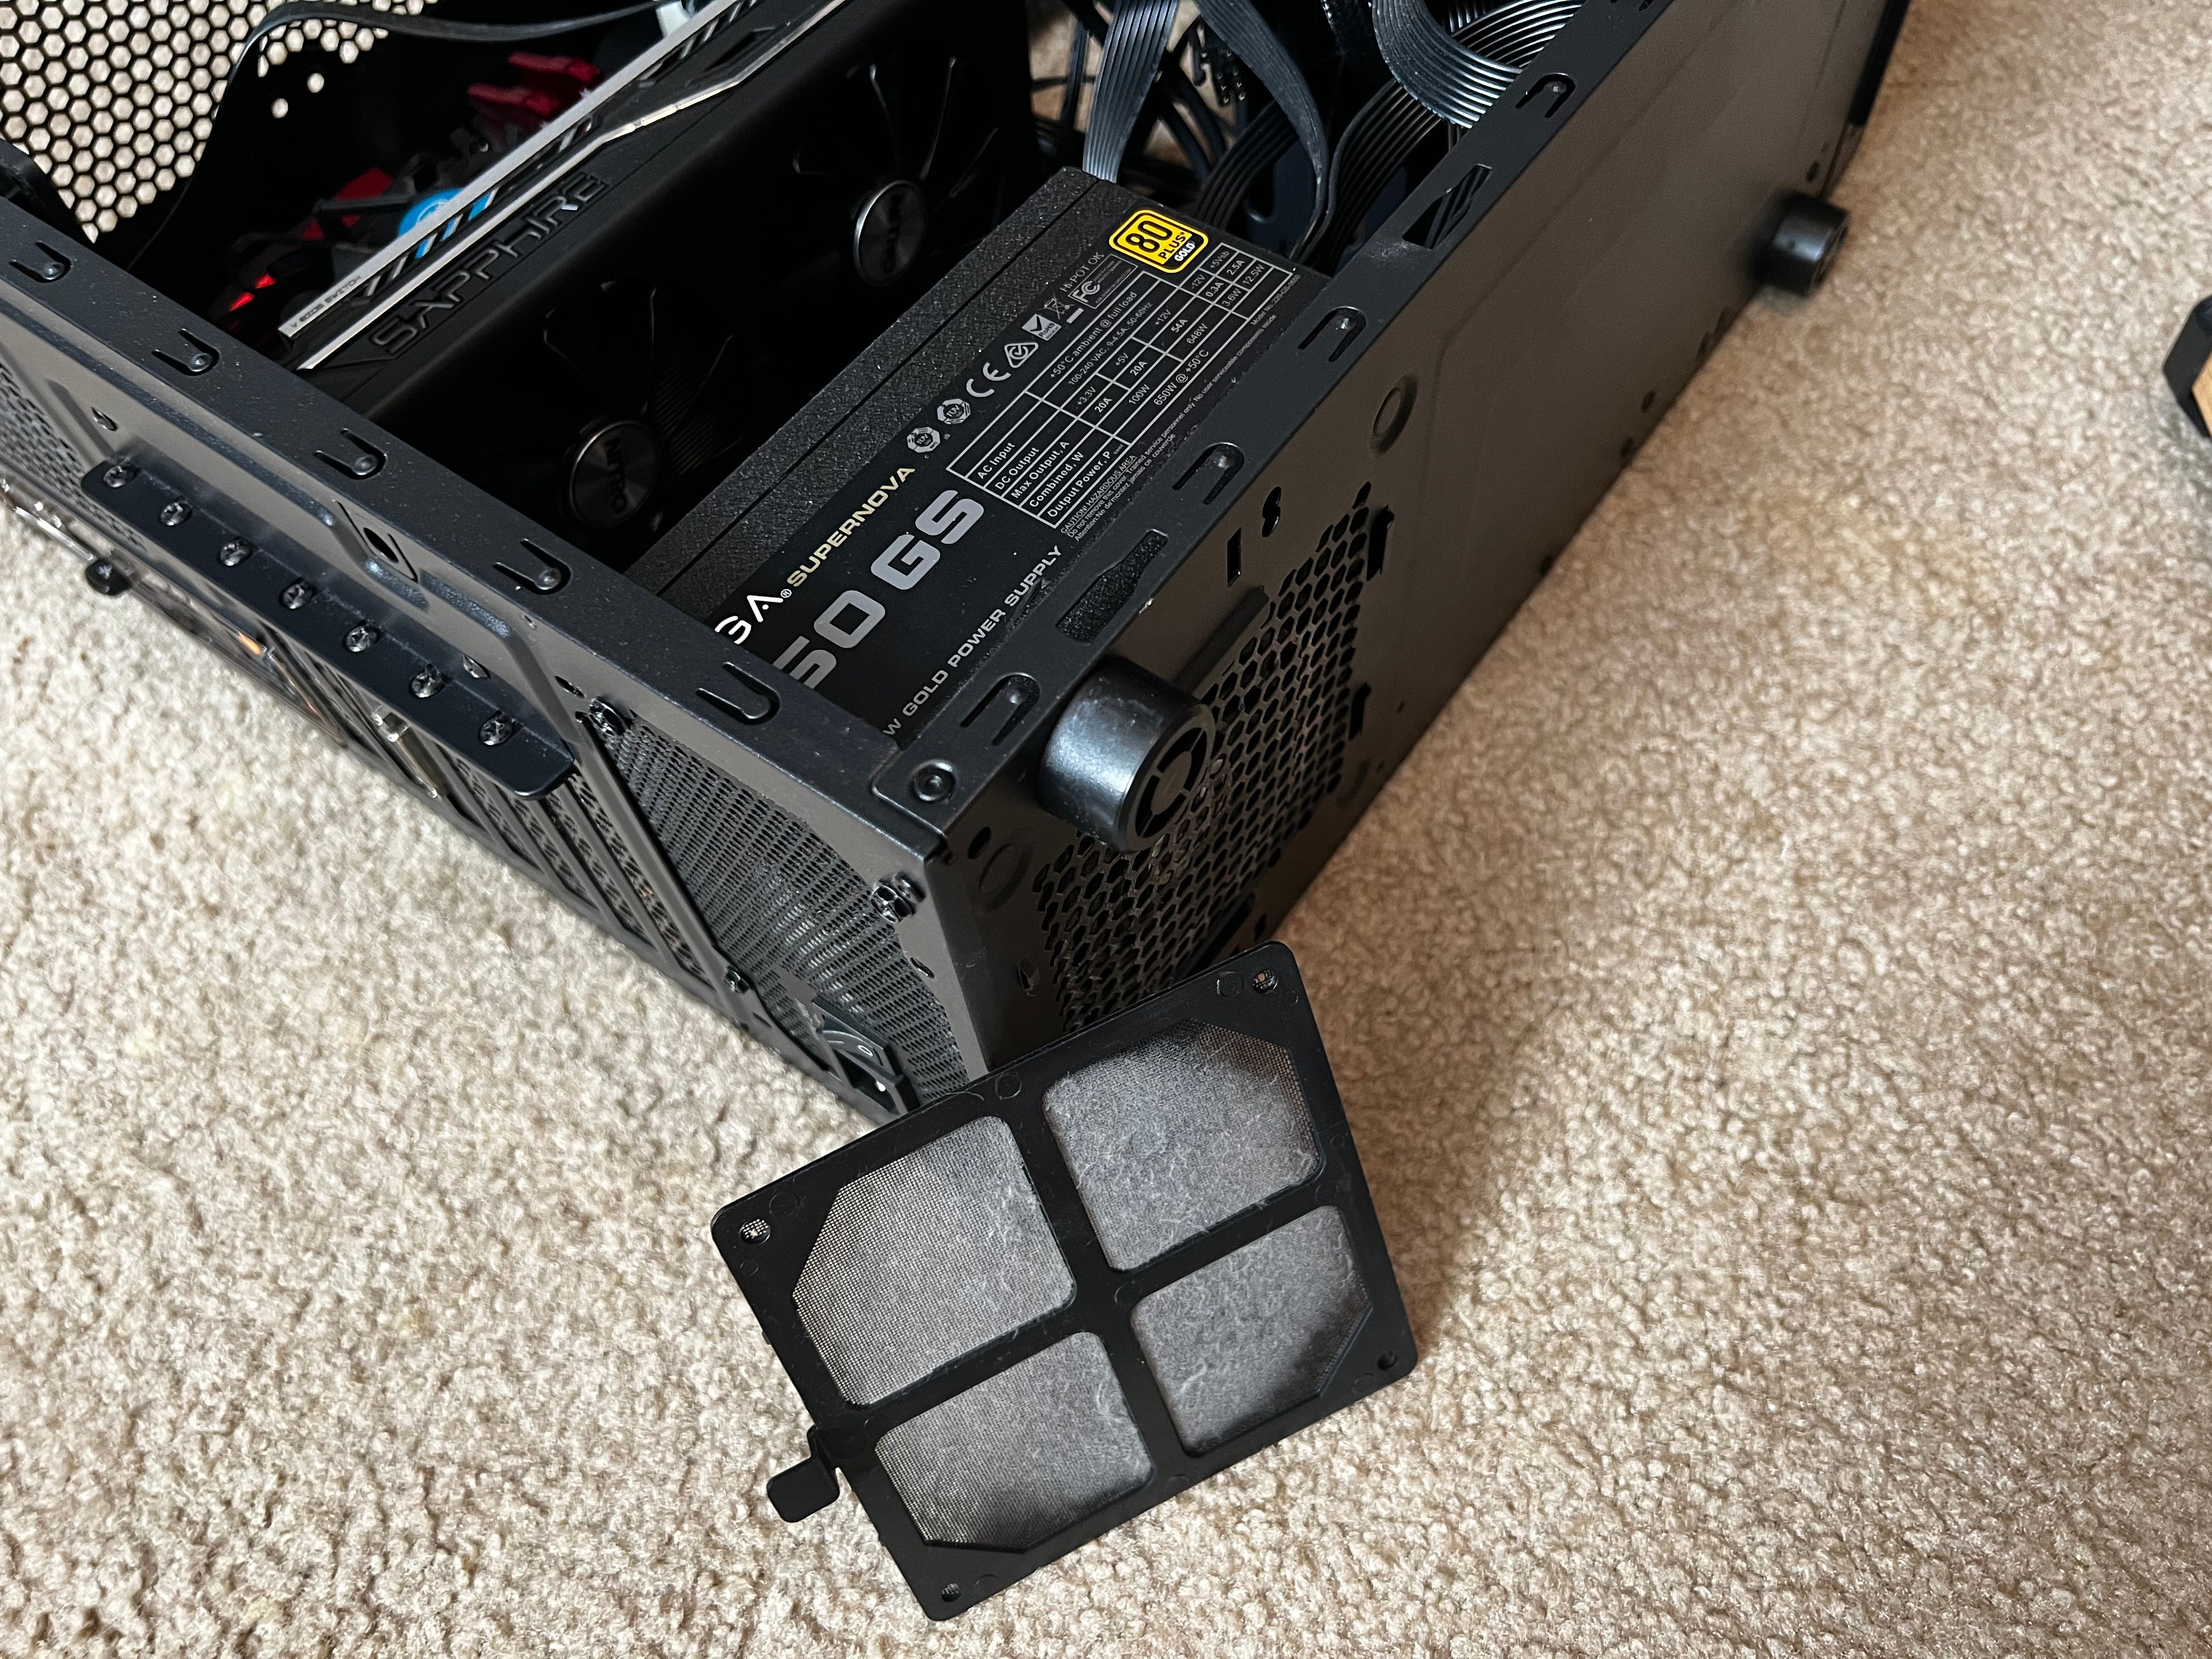 07 PSU Cover Dust - Come pulire il tuo PC desktop